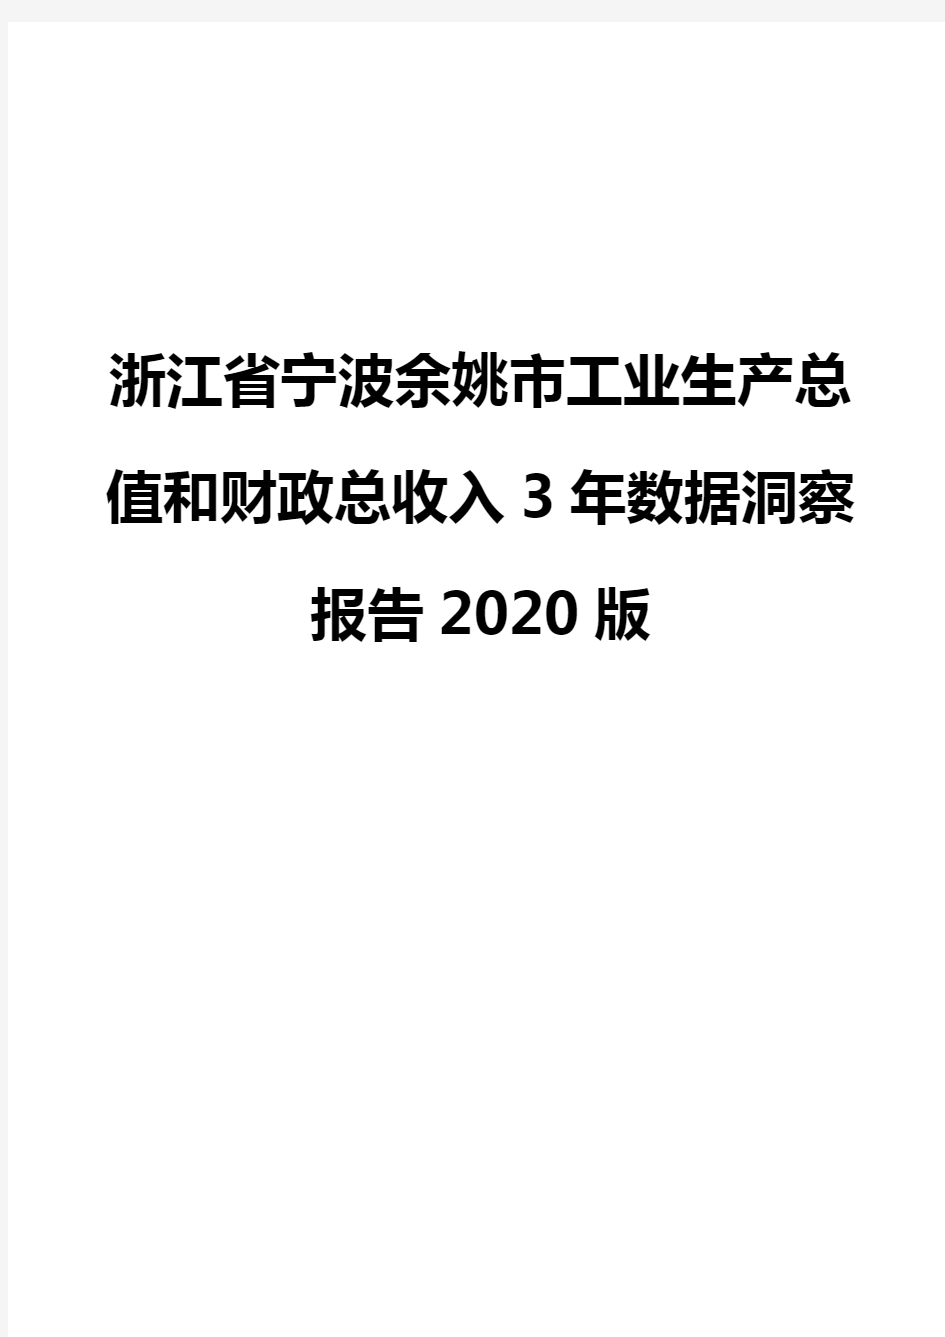 浙江省宁波余姚市工业生产总值和财政总收入3年数据洞察报告2020版